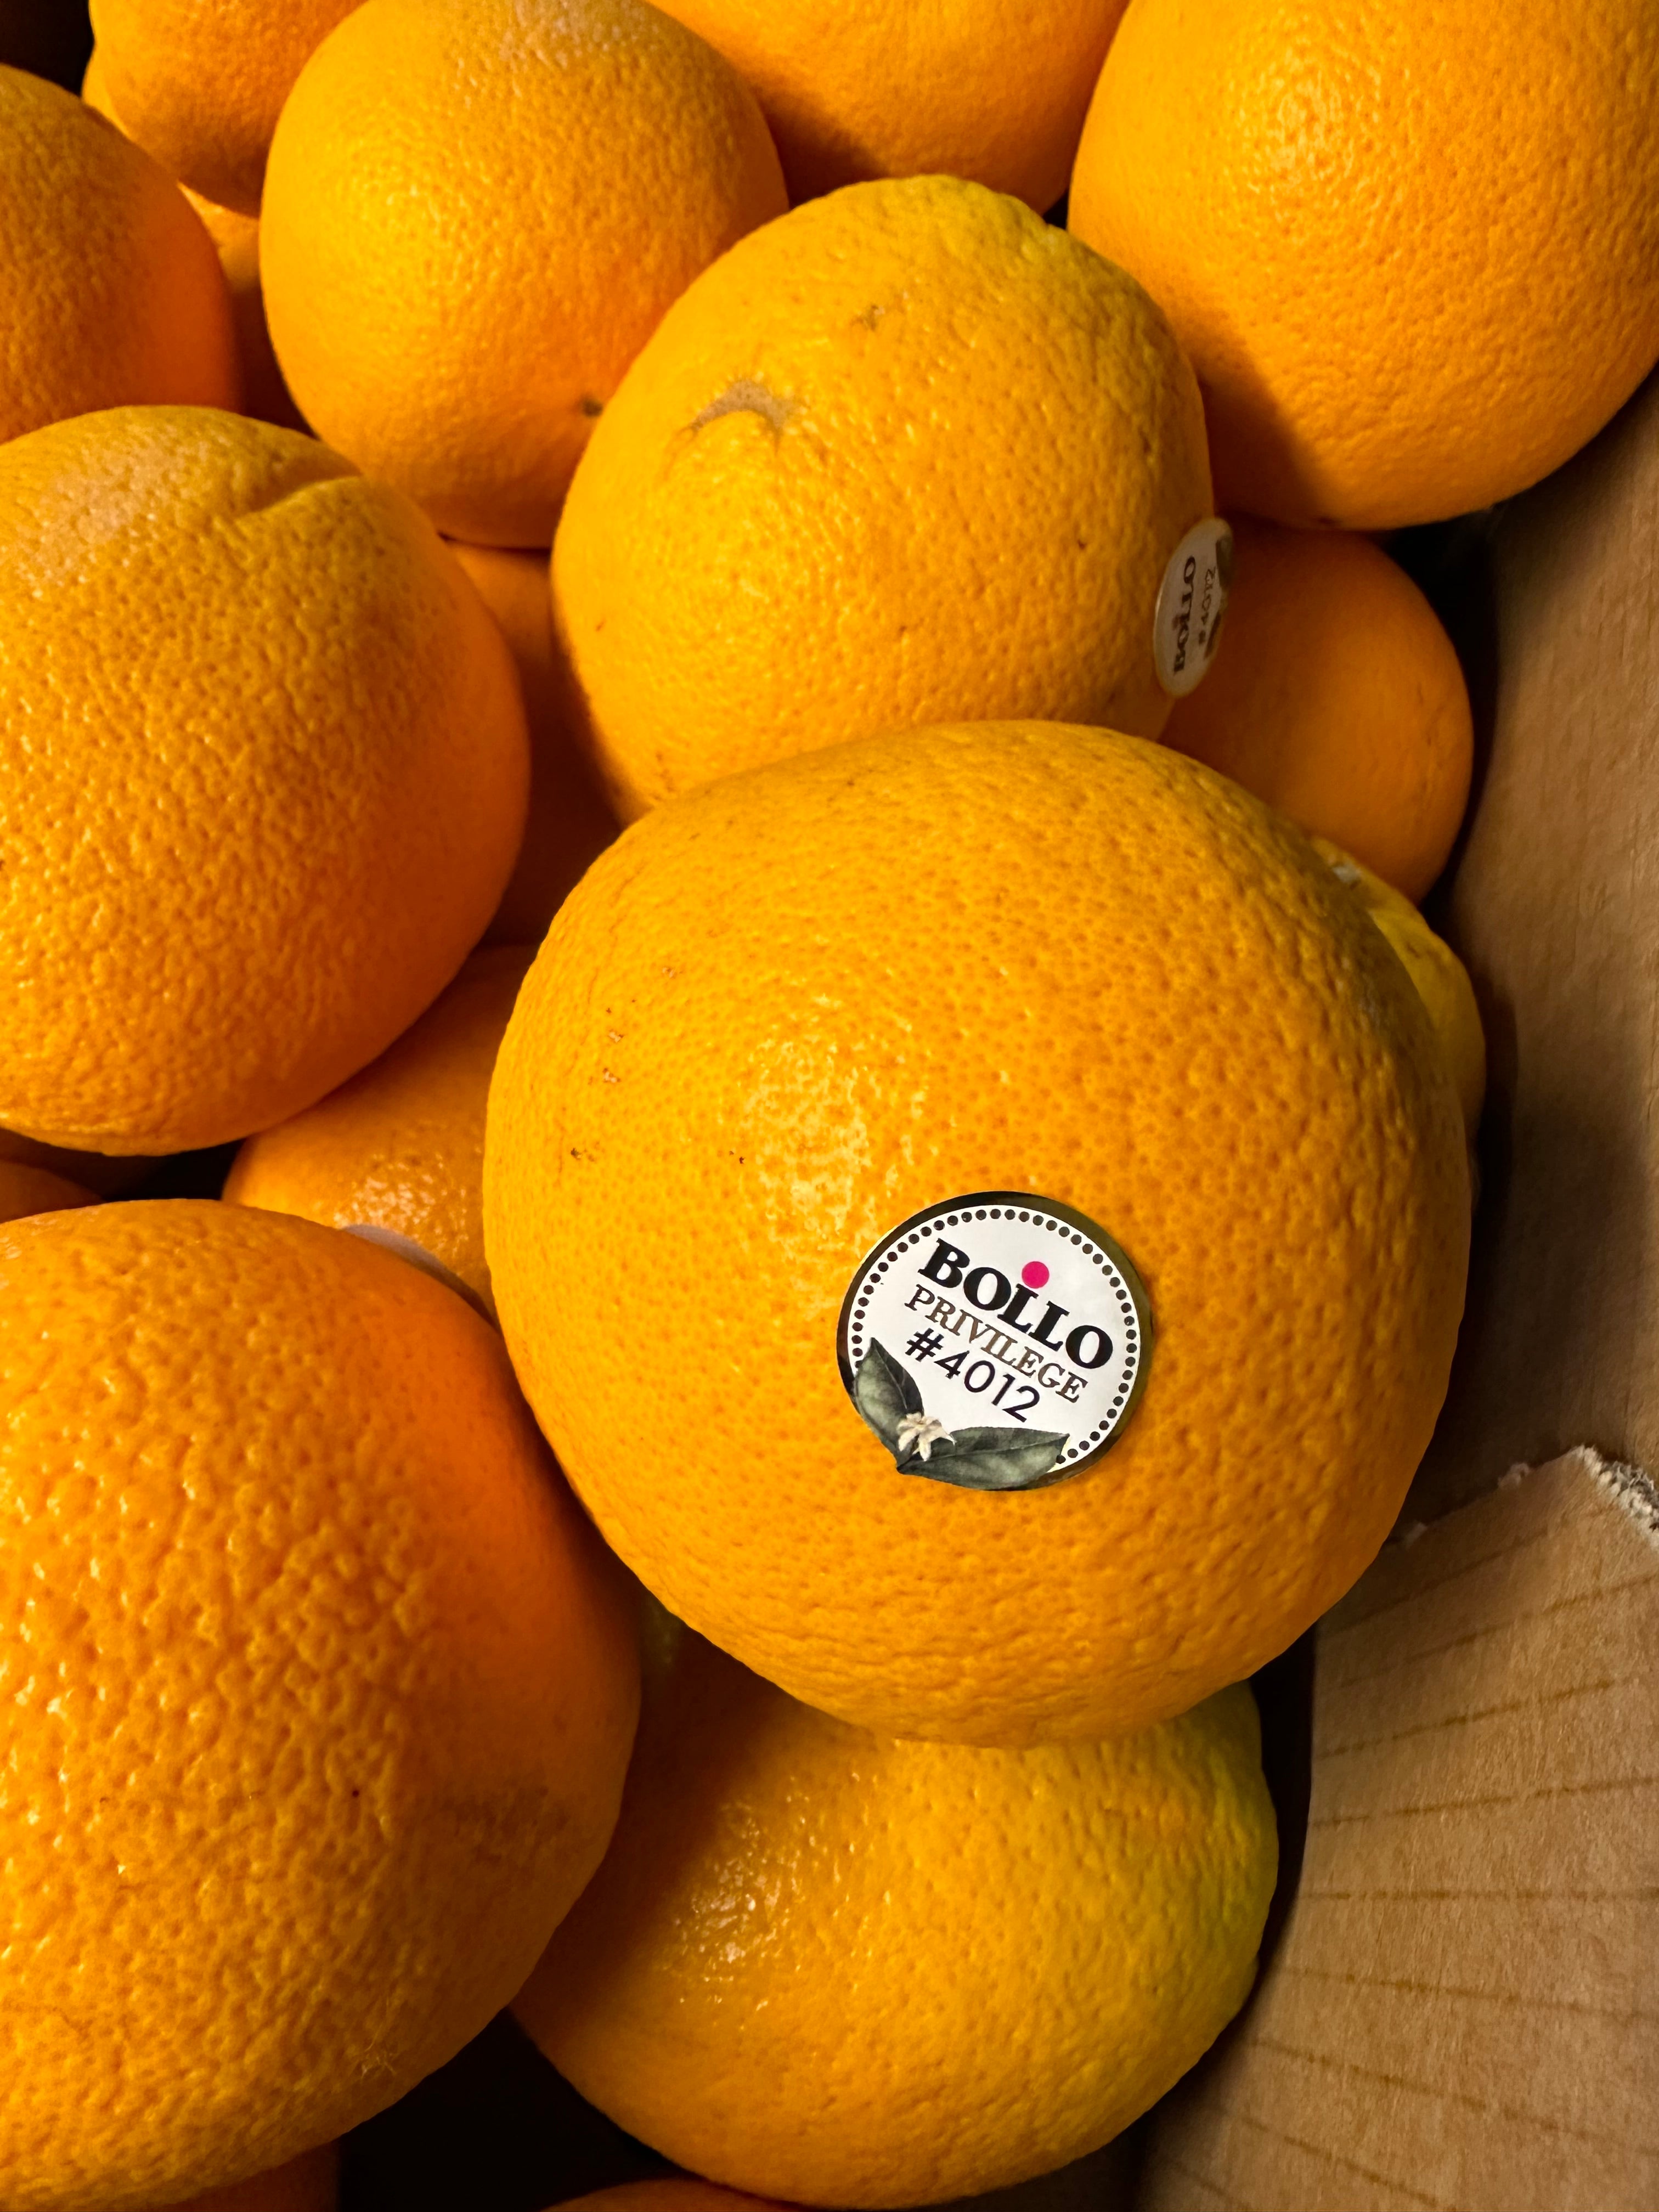 Bollo Spain Oranges #4012